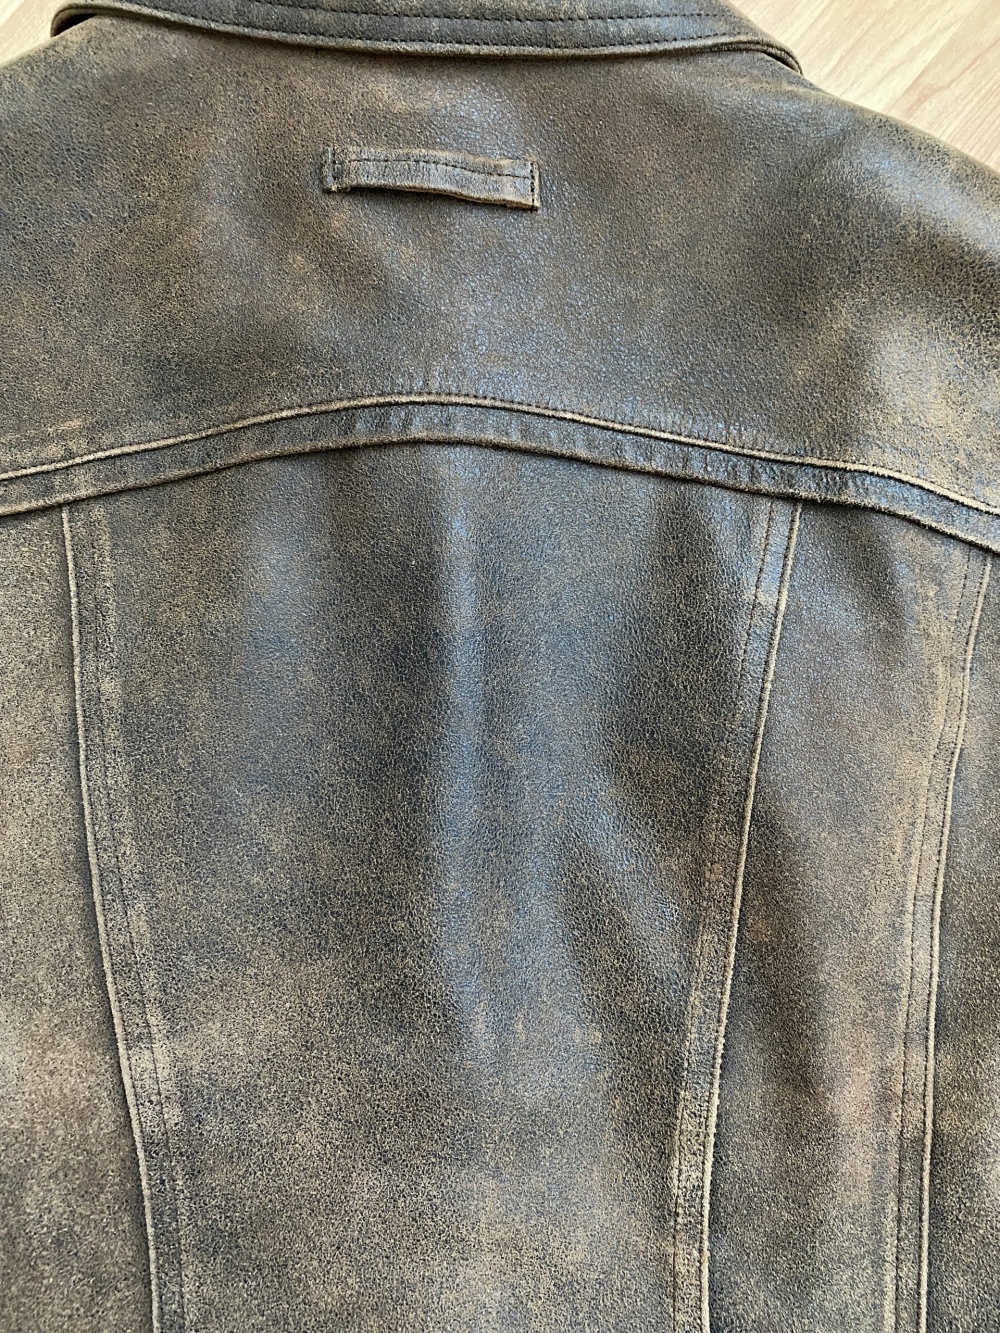 Кожаная куртка Caroline Biss, размер 42-44